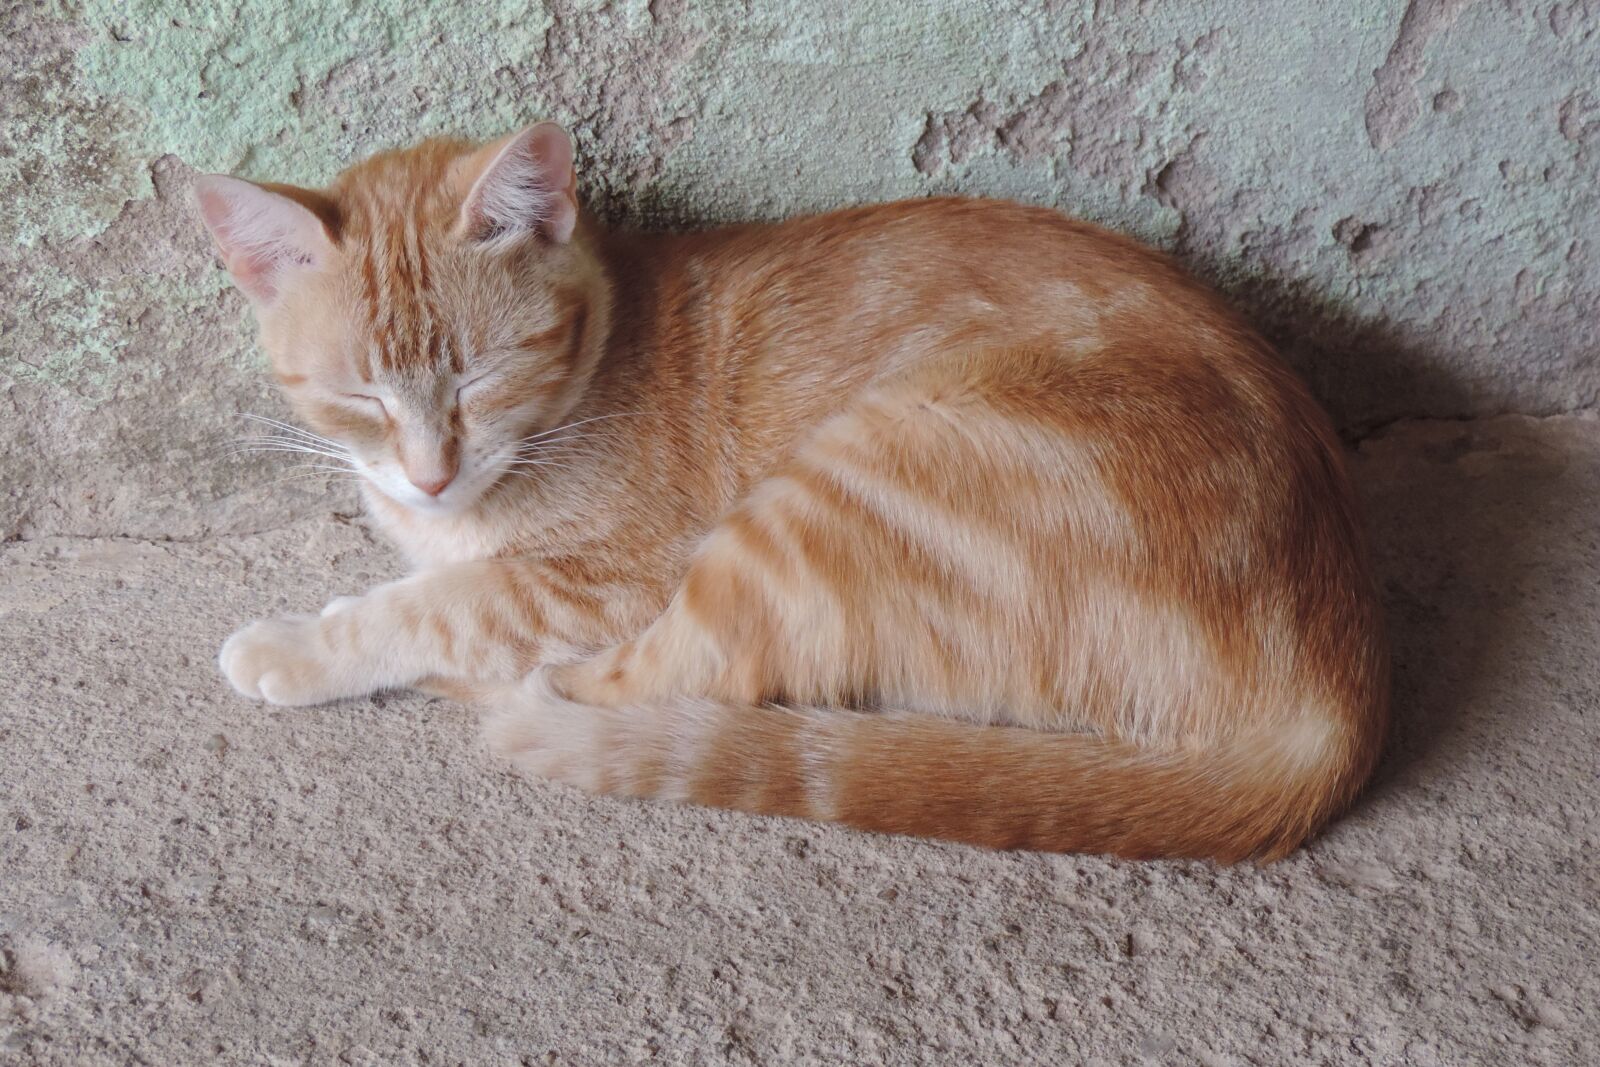 Nikon Coolpix P520 sample photo. Cat, animal, tabby cat photography